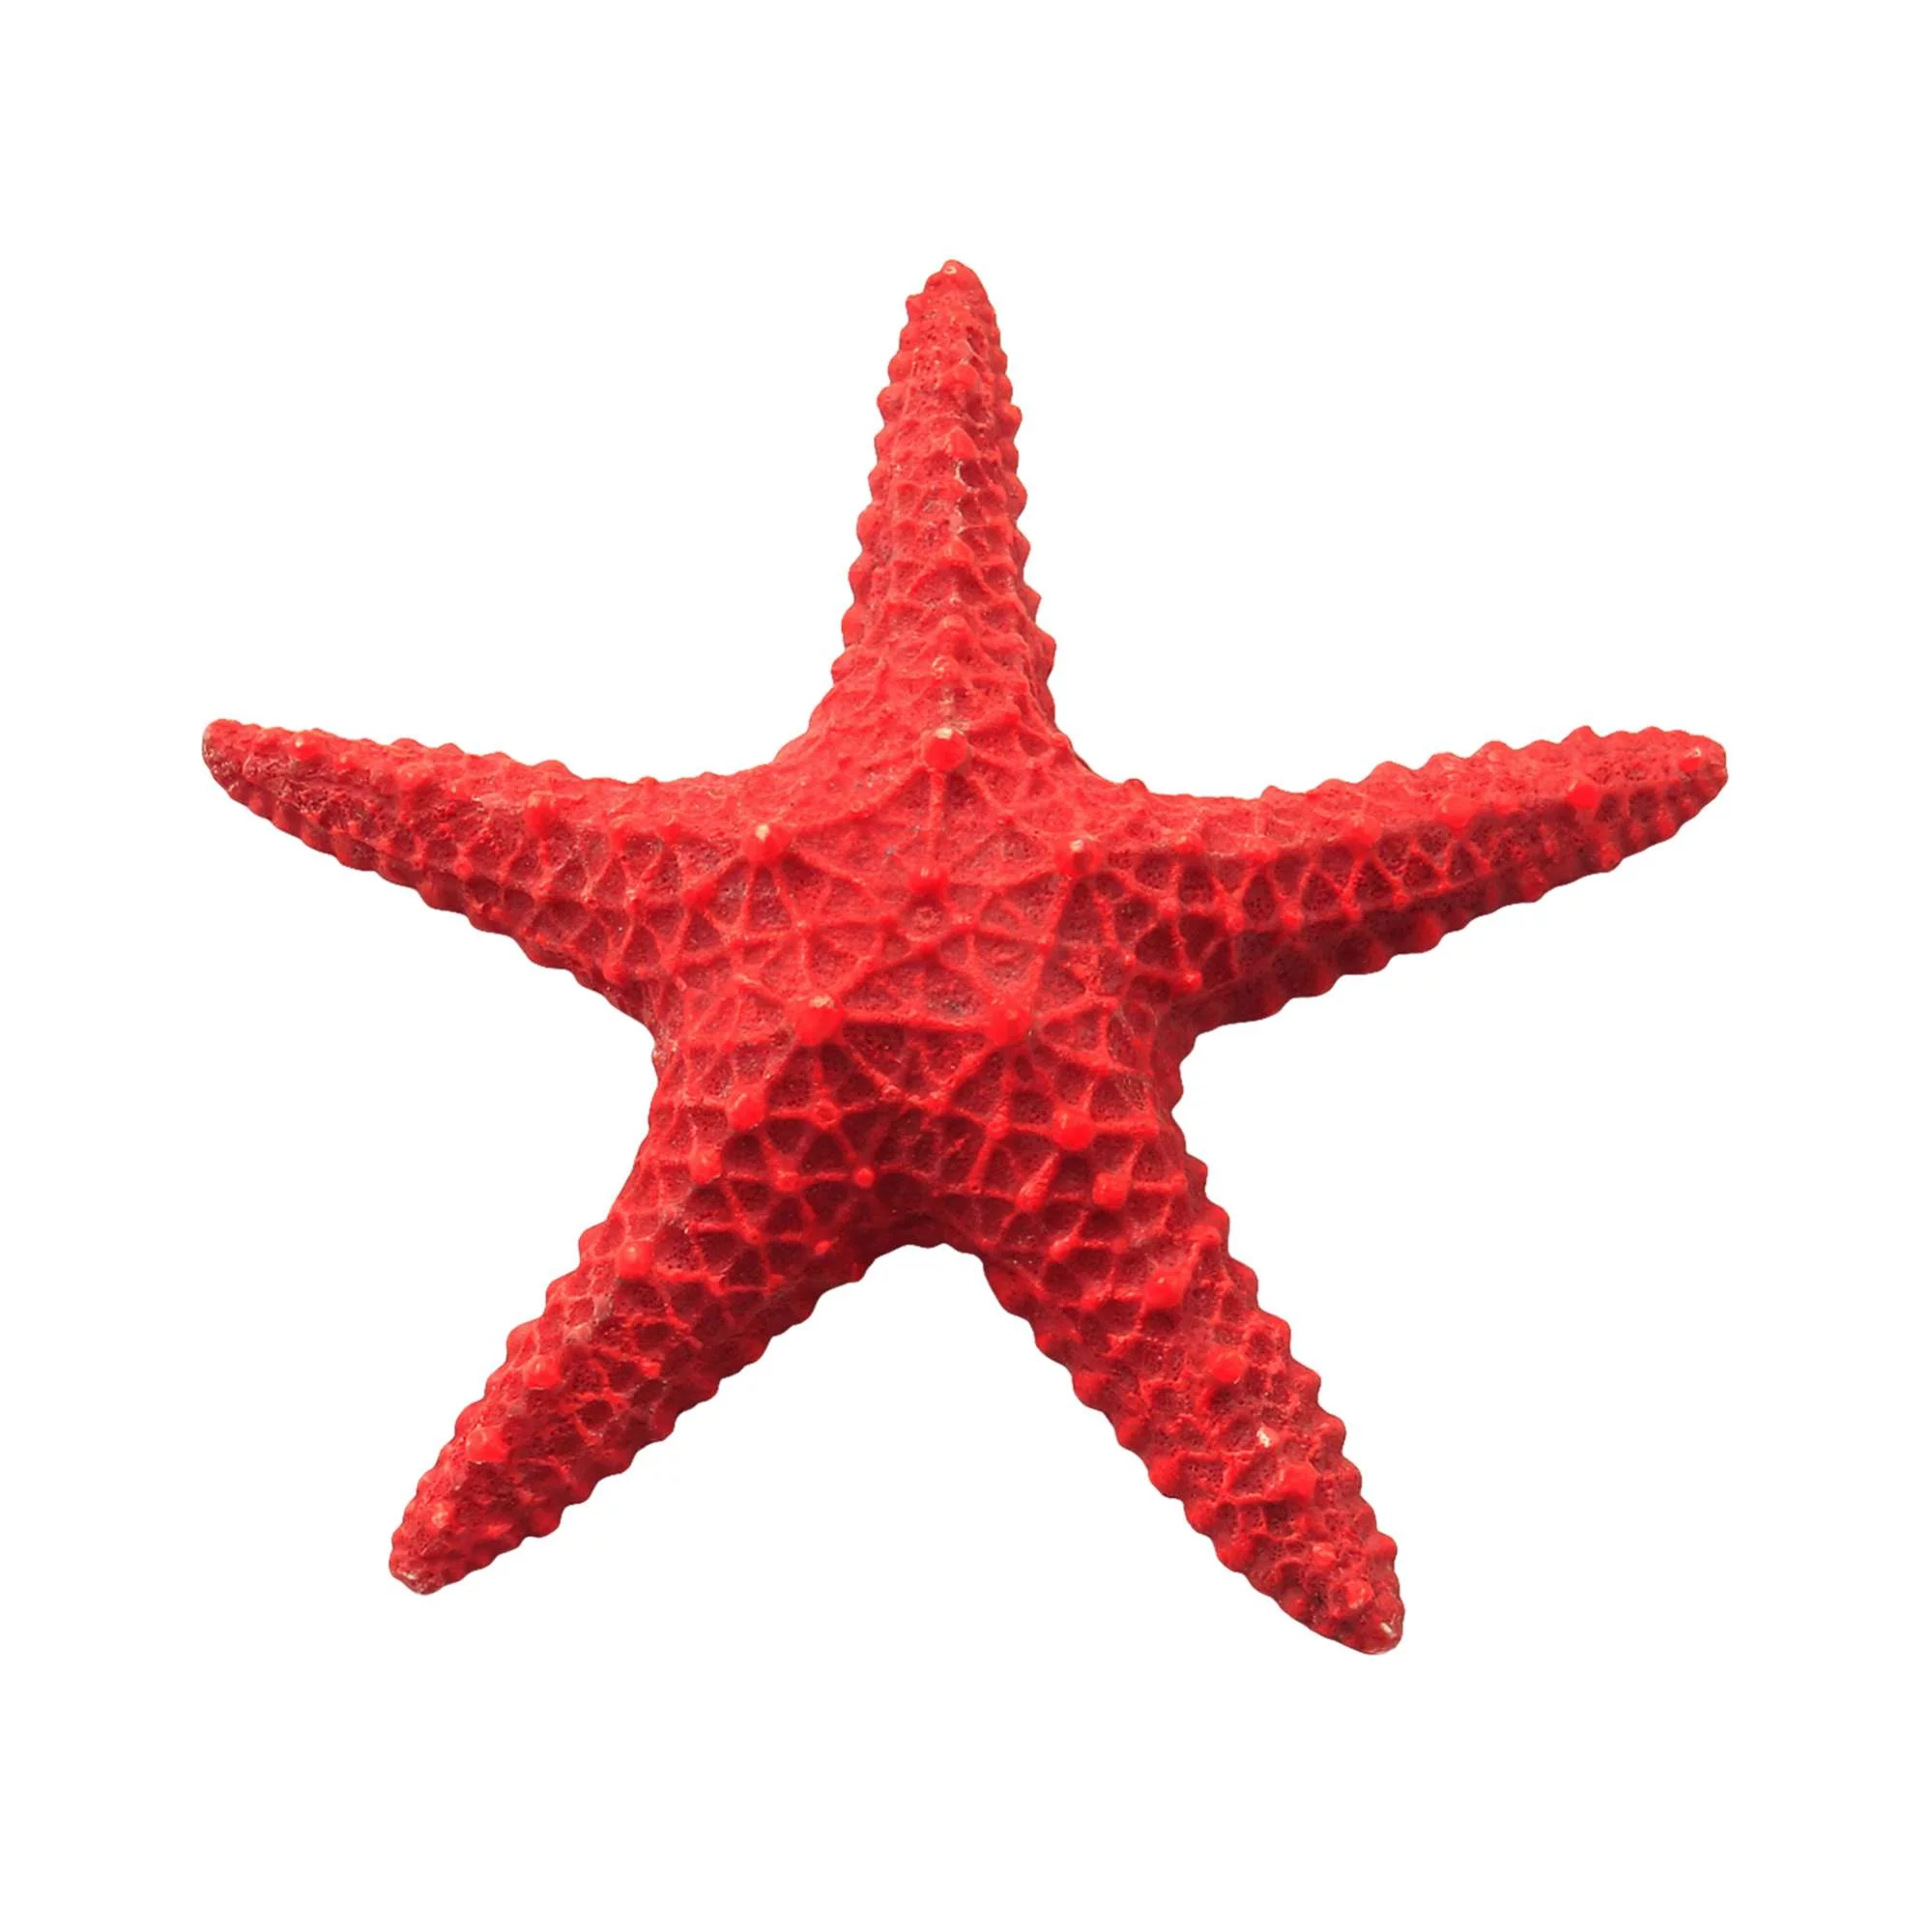 Estrella de mar roja de ICA (15.5 cm) — ICA S.A.